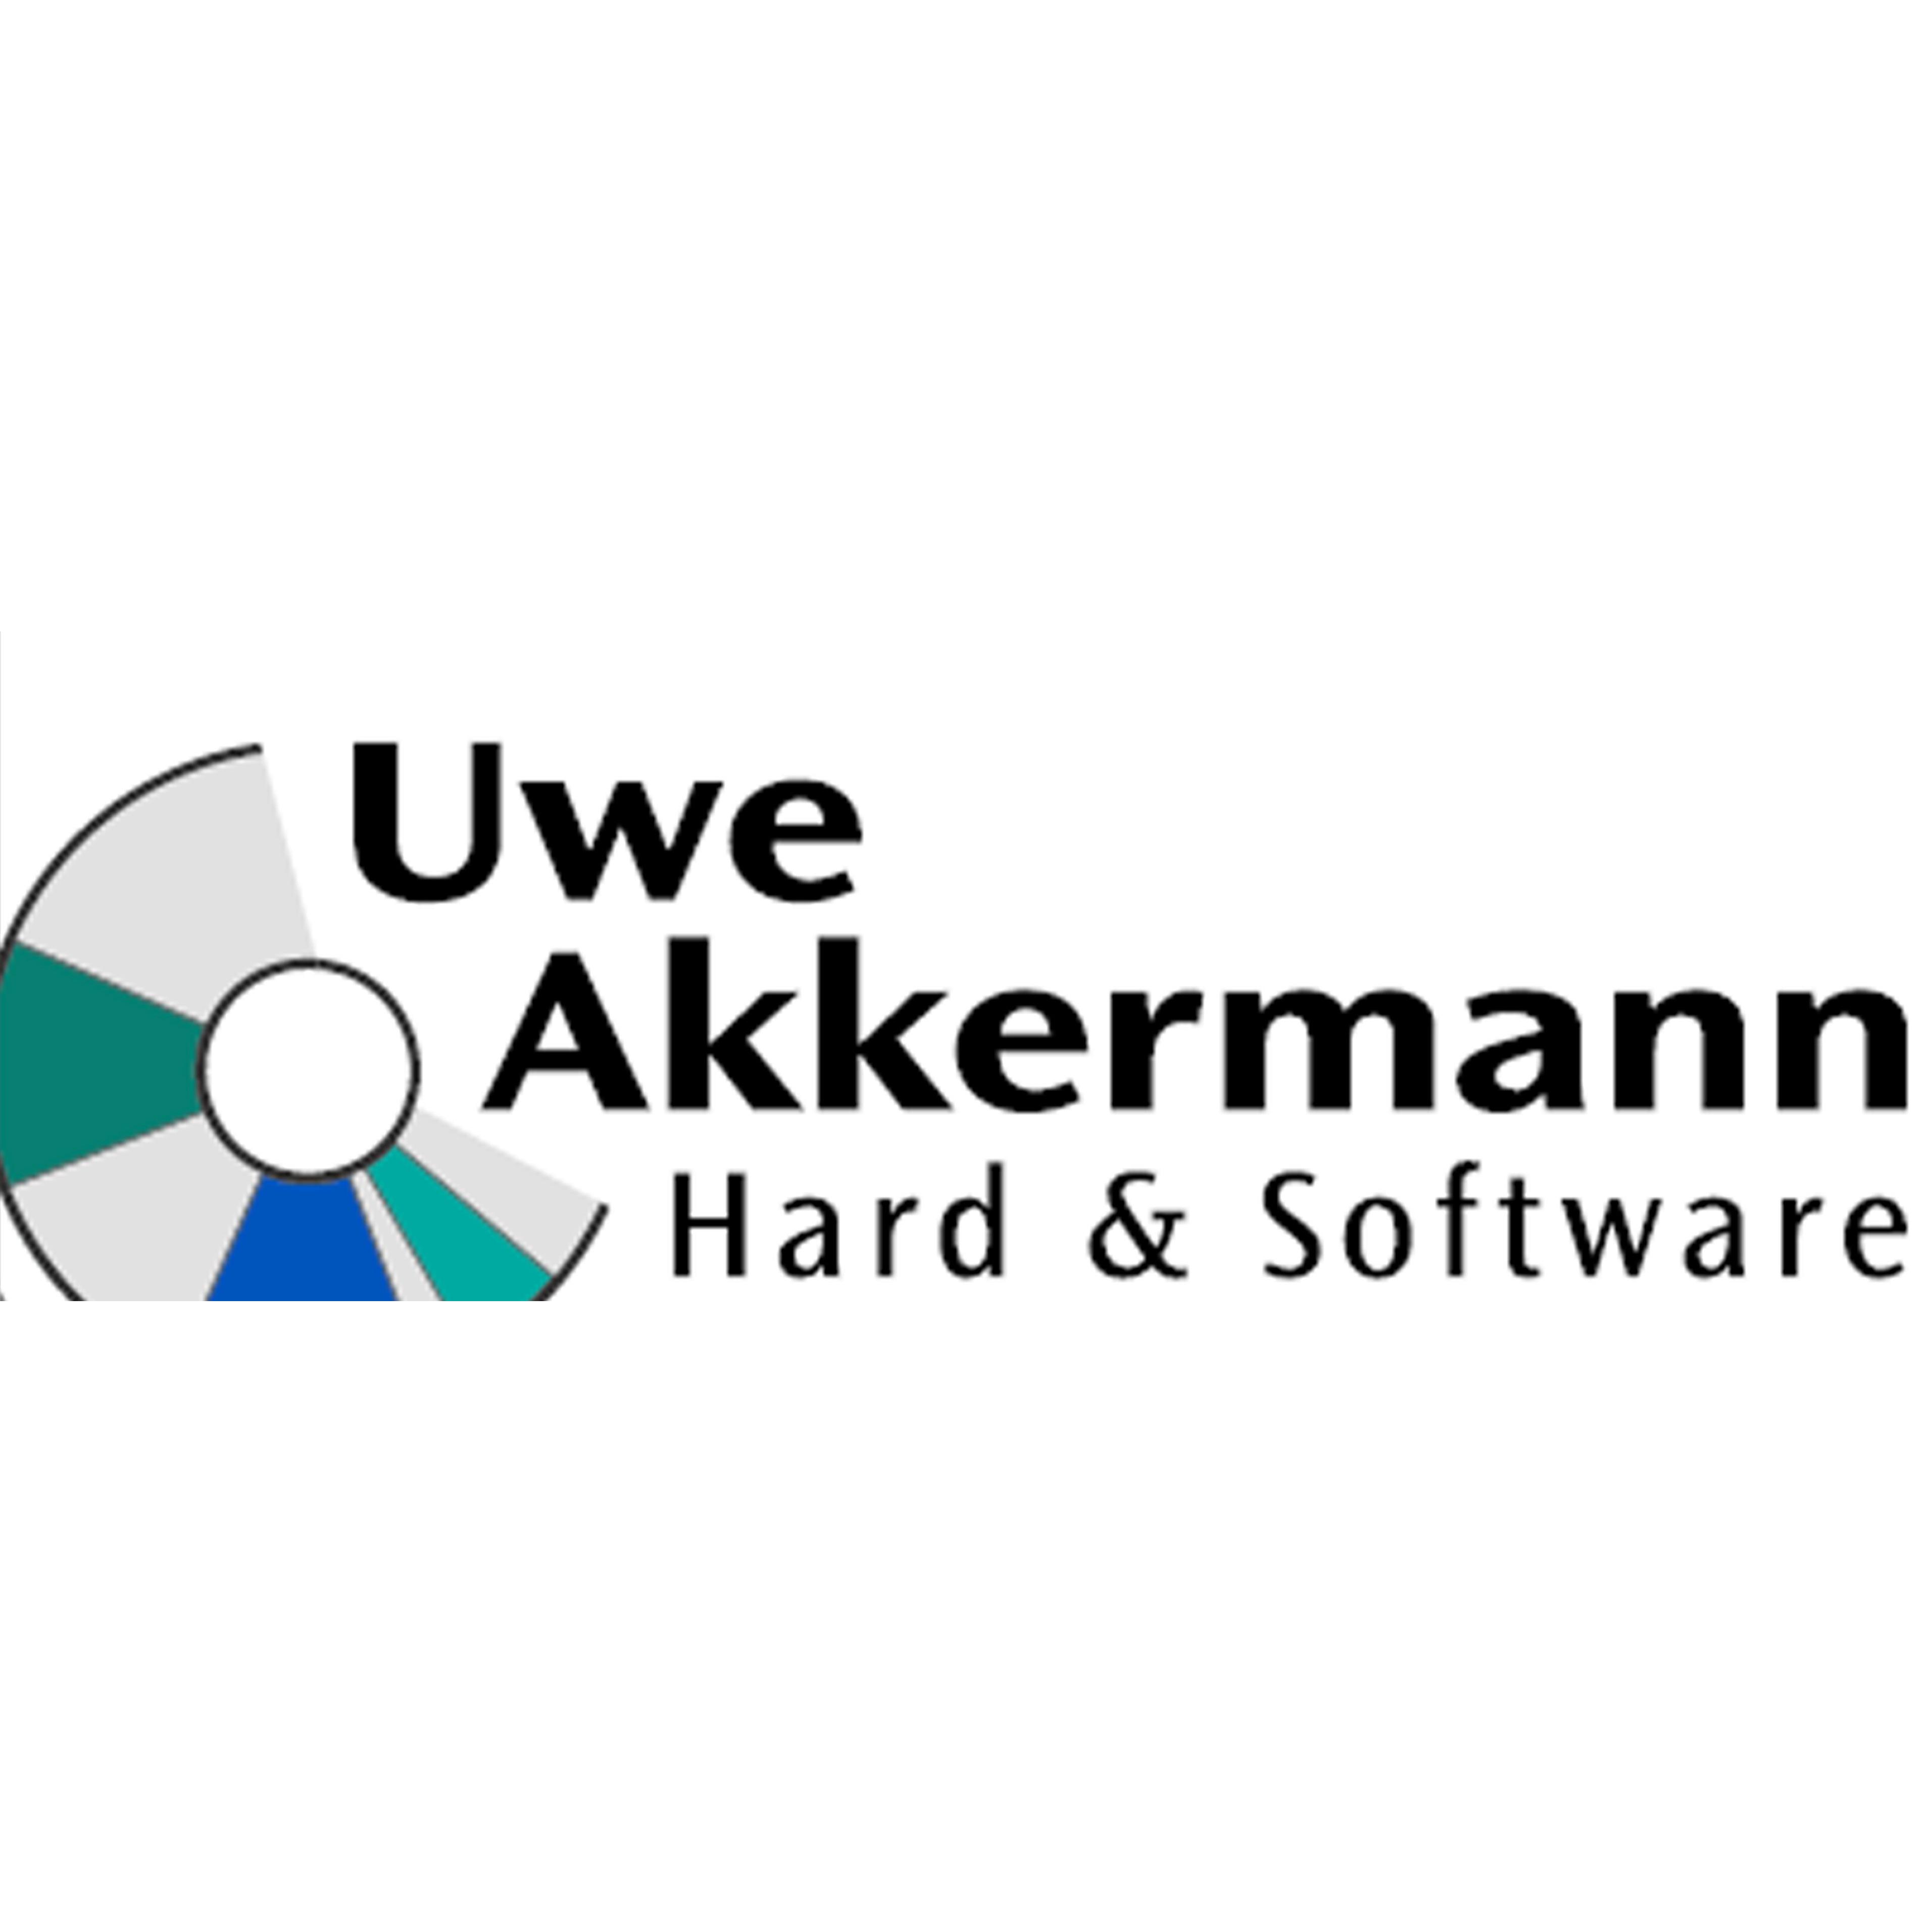 Hard und Software Inh. Uwe Akkermann in Warstein - Logo